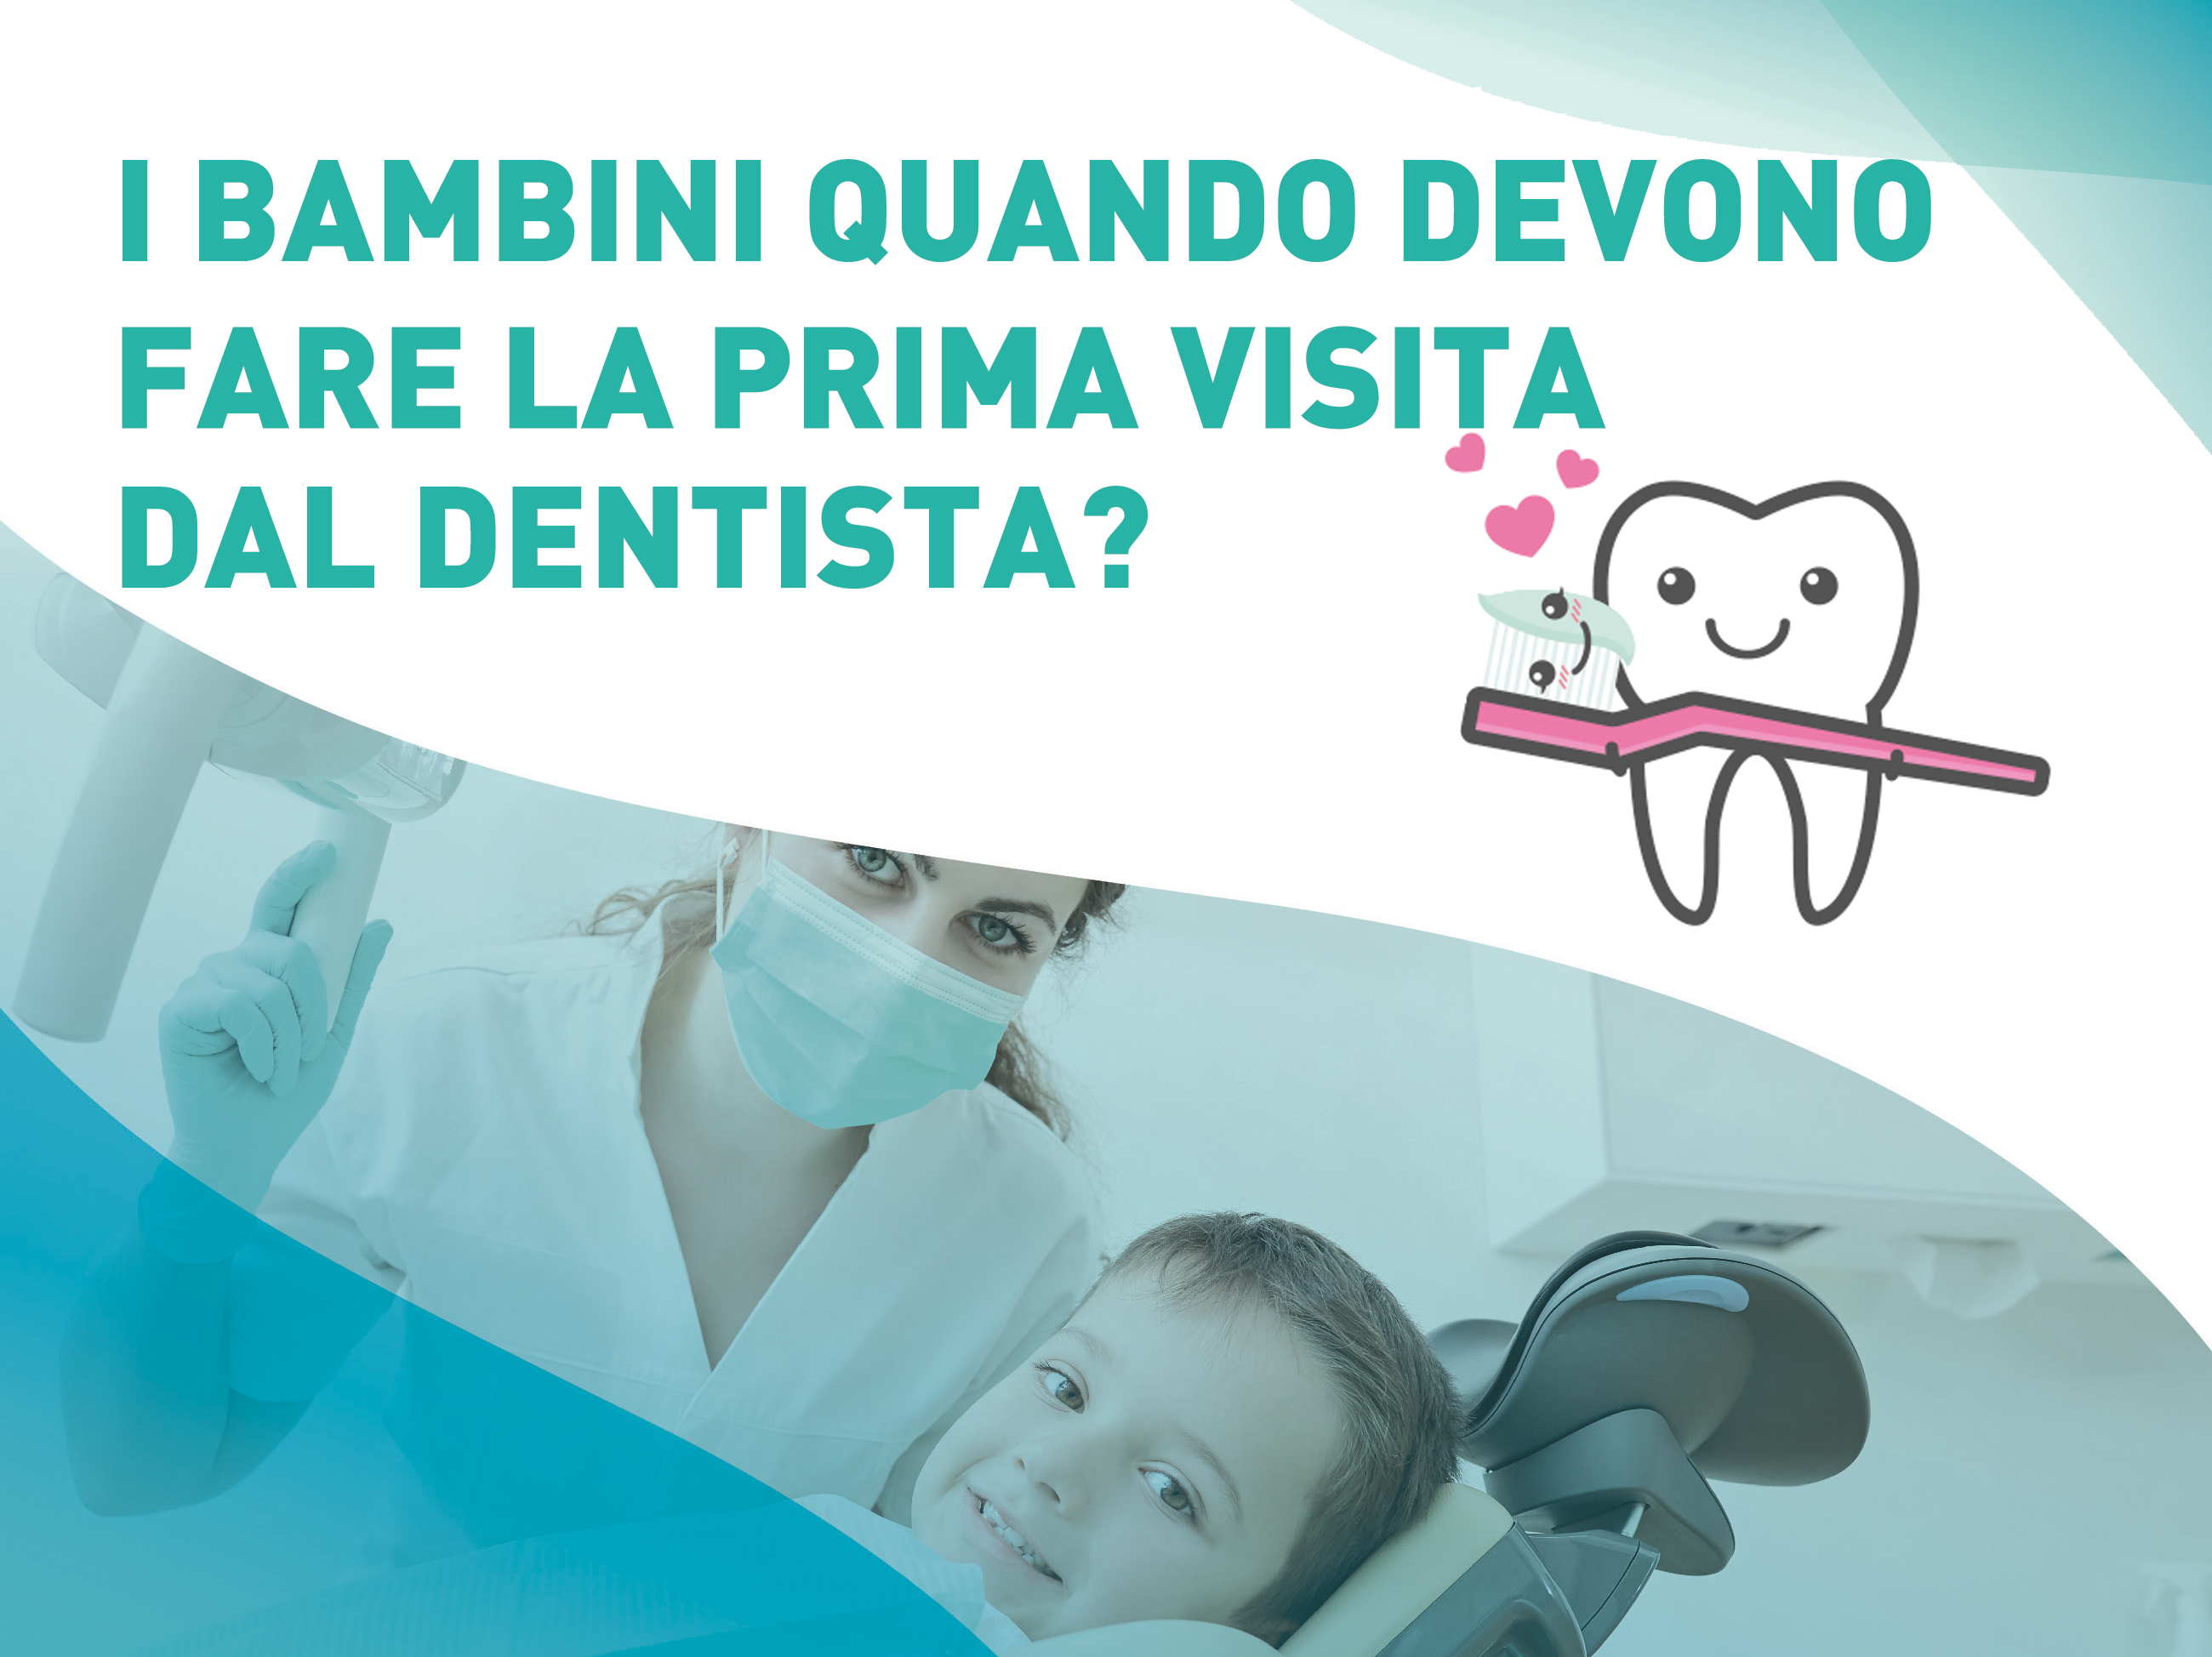 I bambini quando devono fare la prima visita dal dentista?